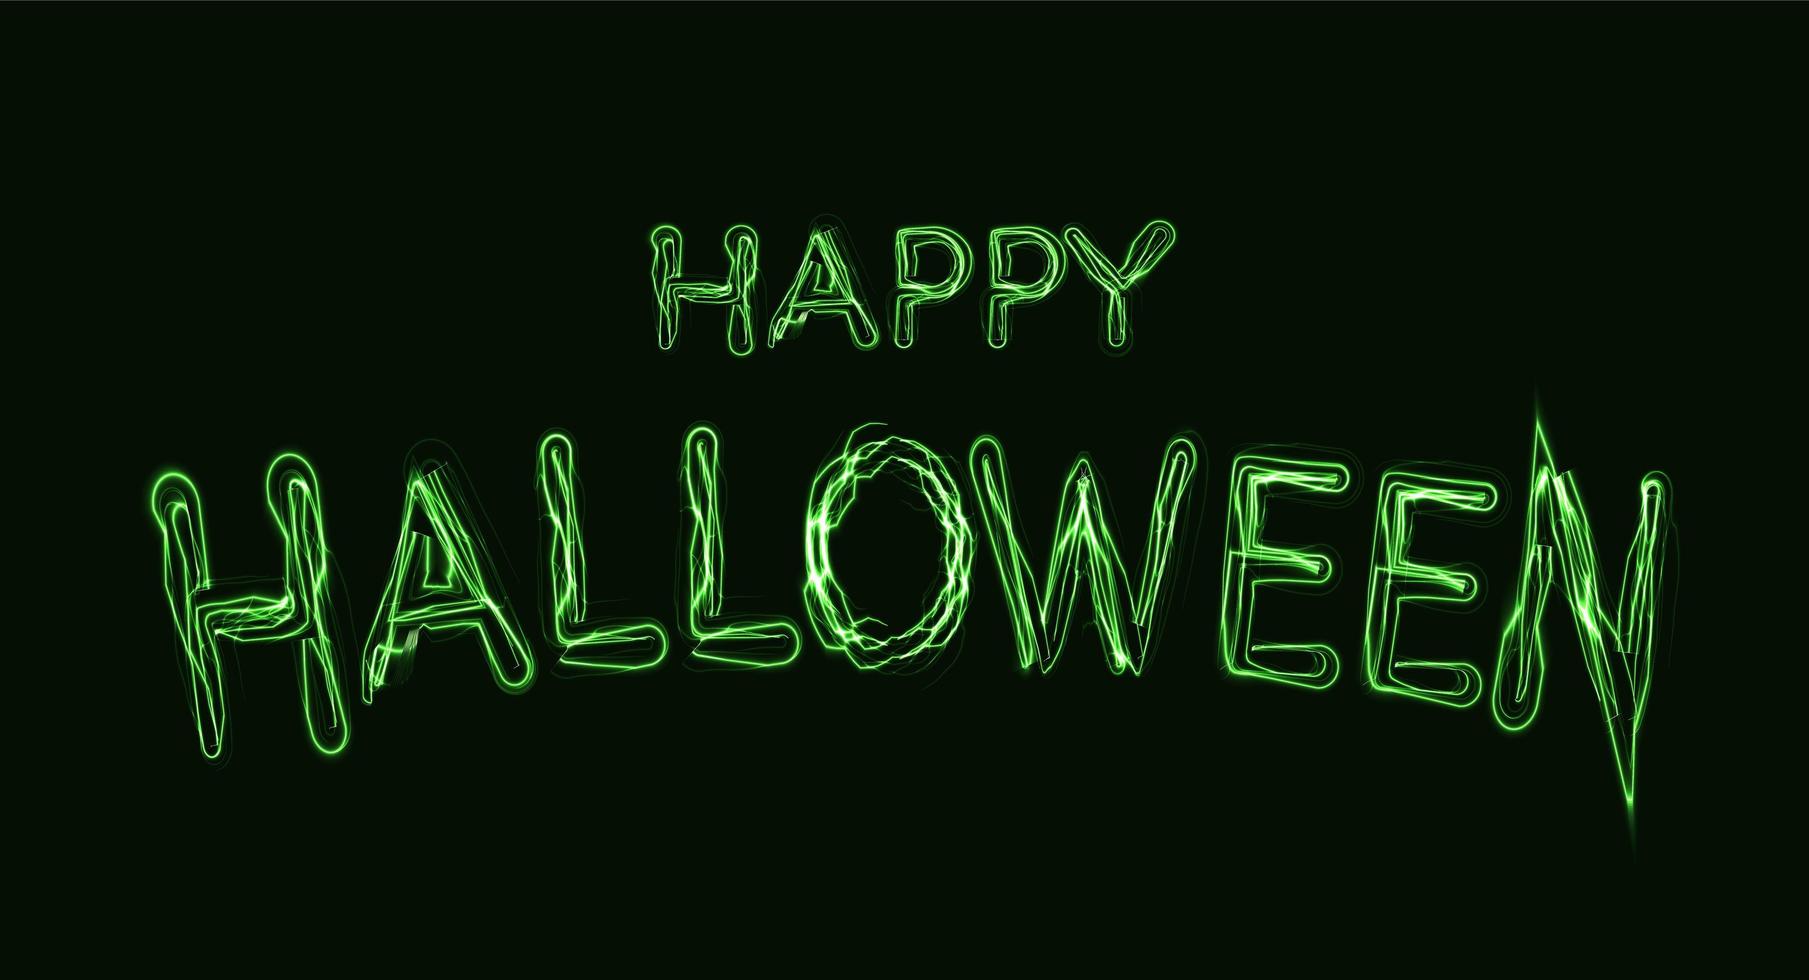 poster di halloween felice. lettere magiche verdi per rituali spirituali e la celebrazione del giorno di halloween. illustrazione vettoriale su sfondo nero.